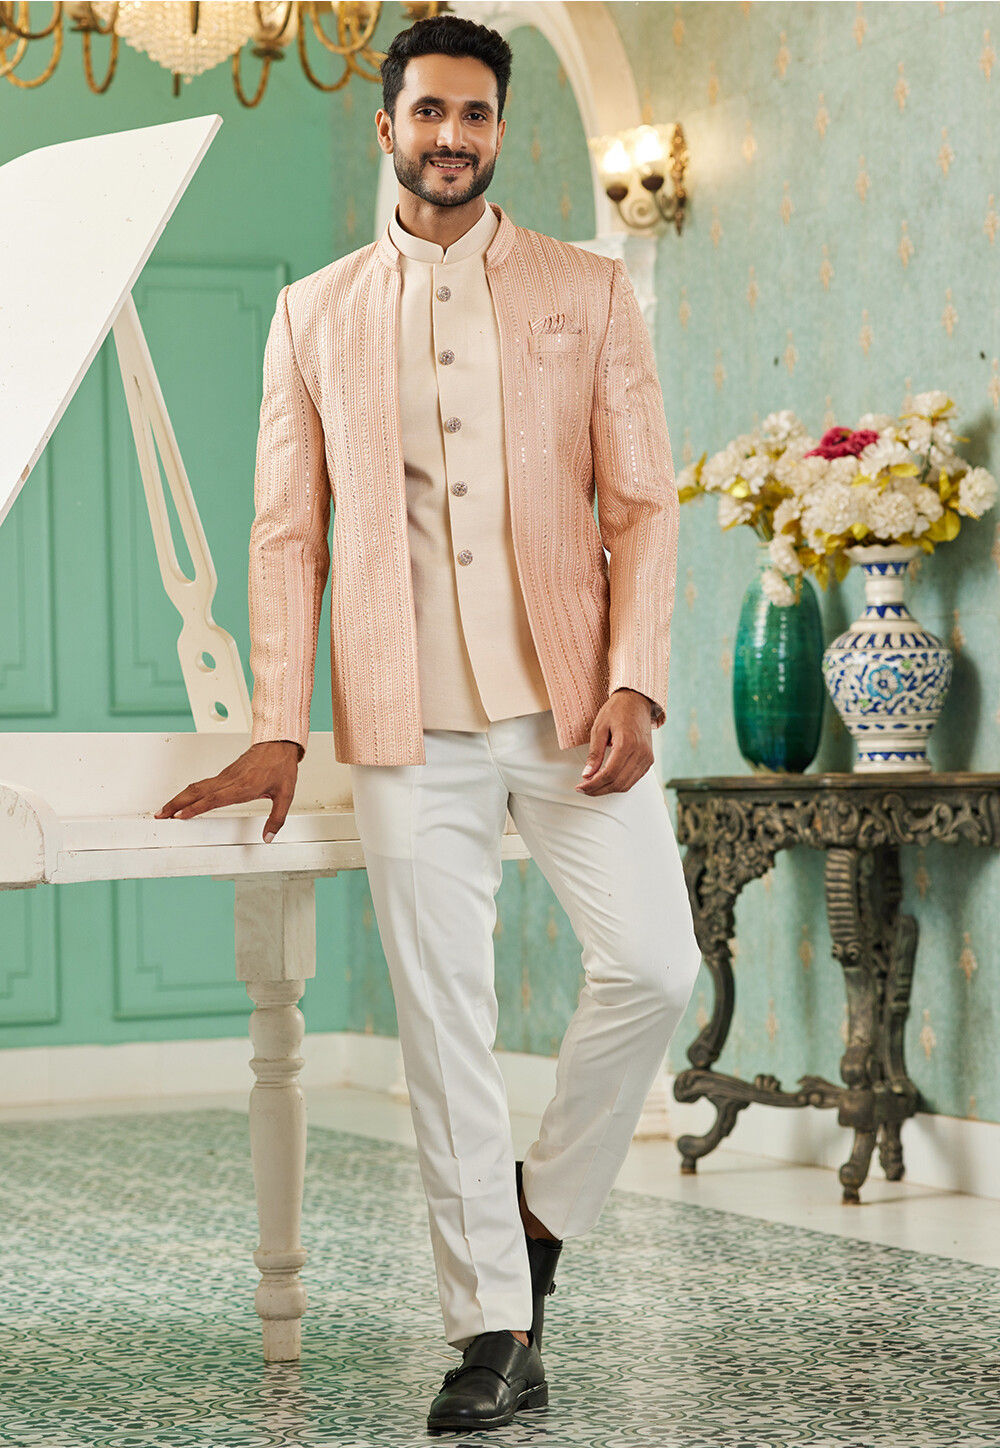 Indian Ethnic Stylish Jodhpuri Suit for Man Mandarin Suit for Men Jodhpuri  Blazer for Wedding, Bandhgala Suit for Men Ethnic Wear - Etsy